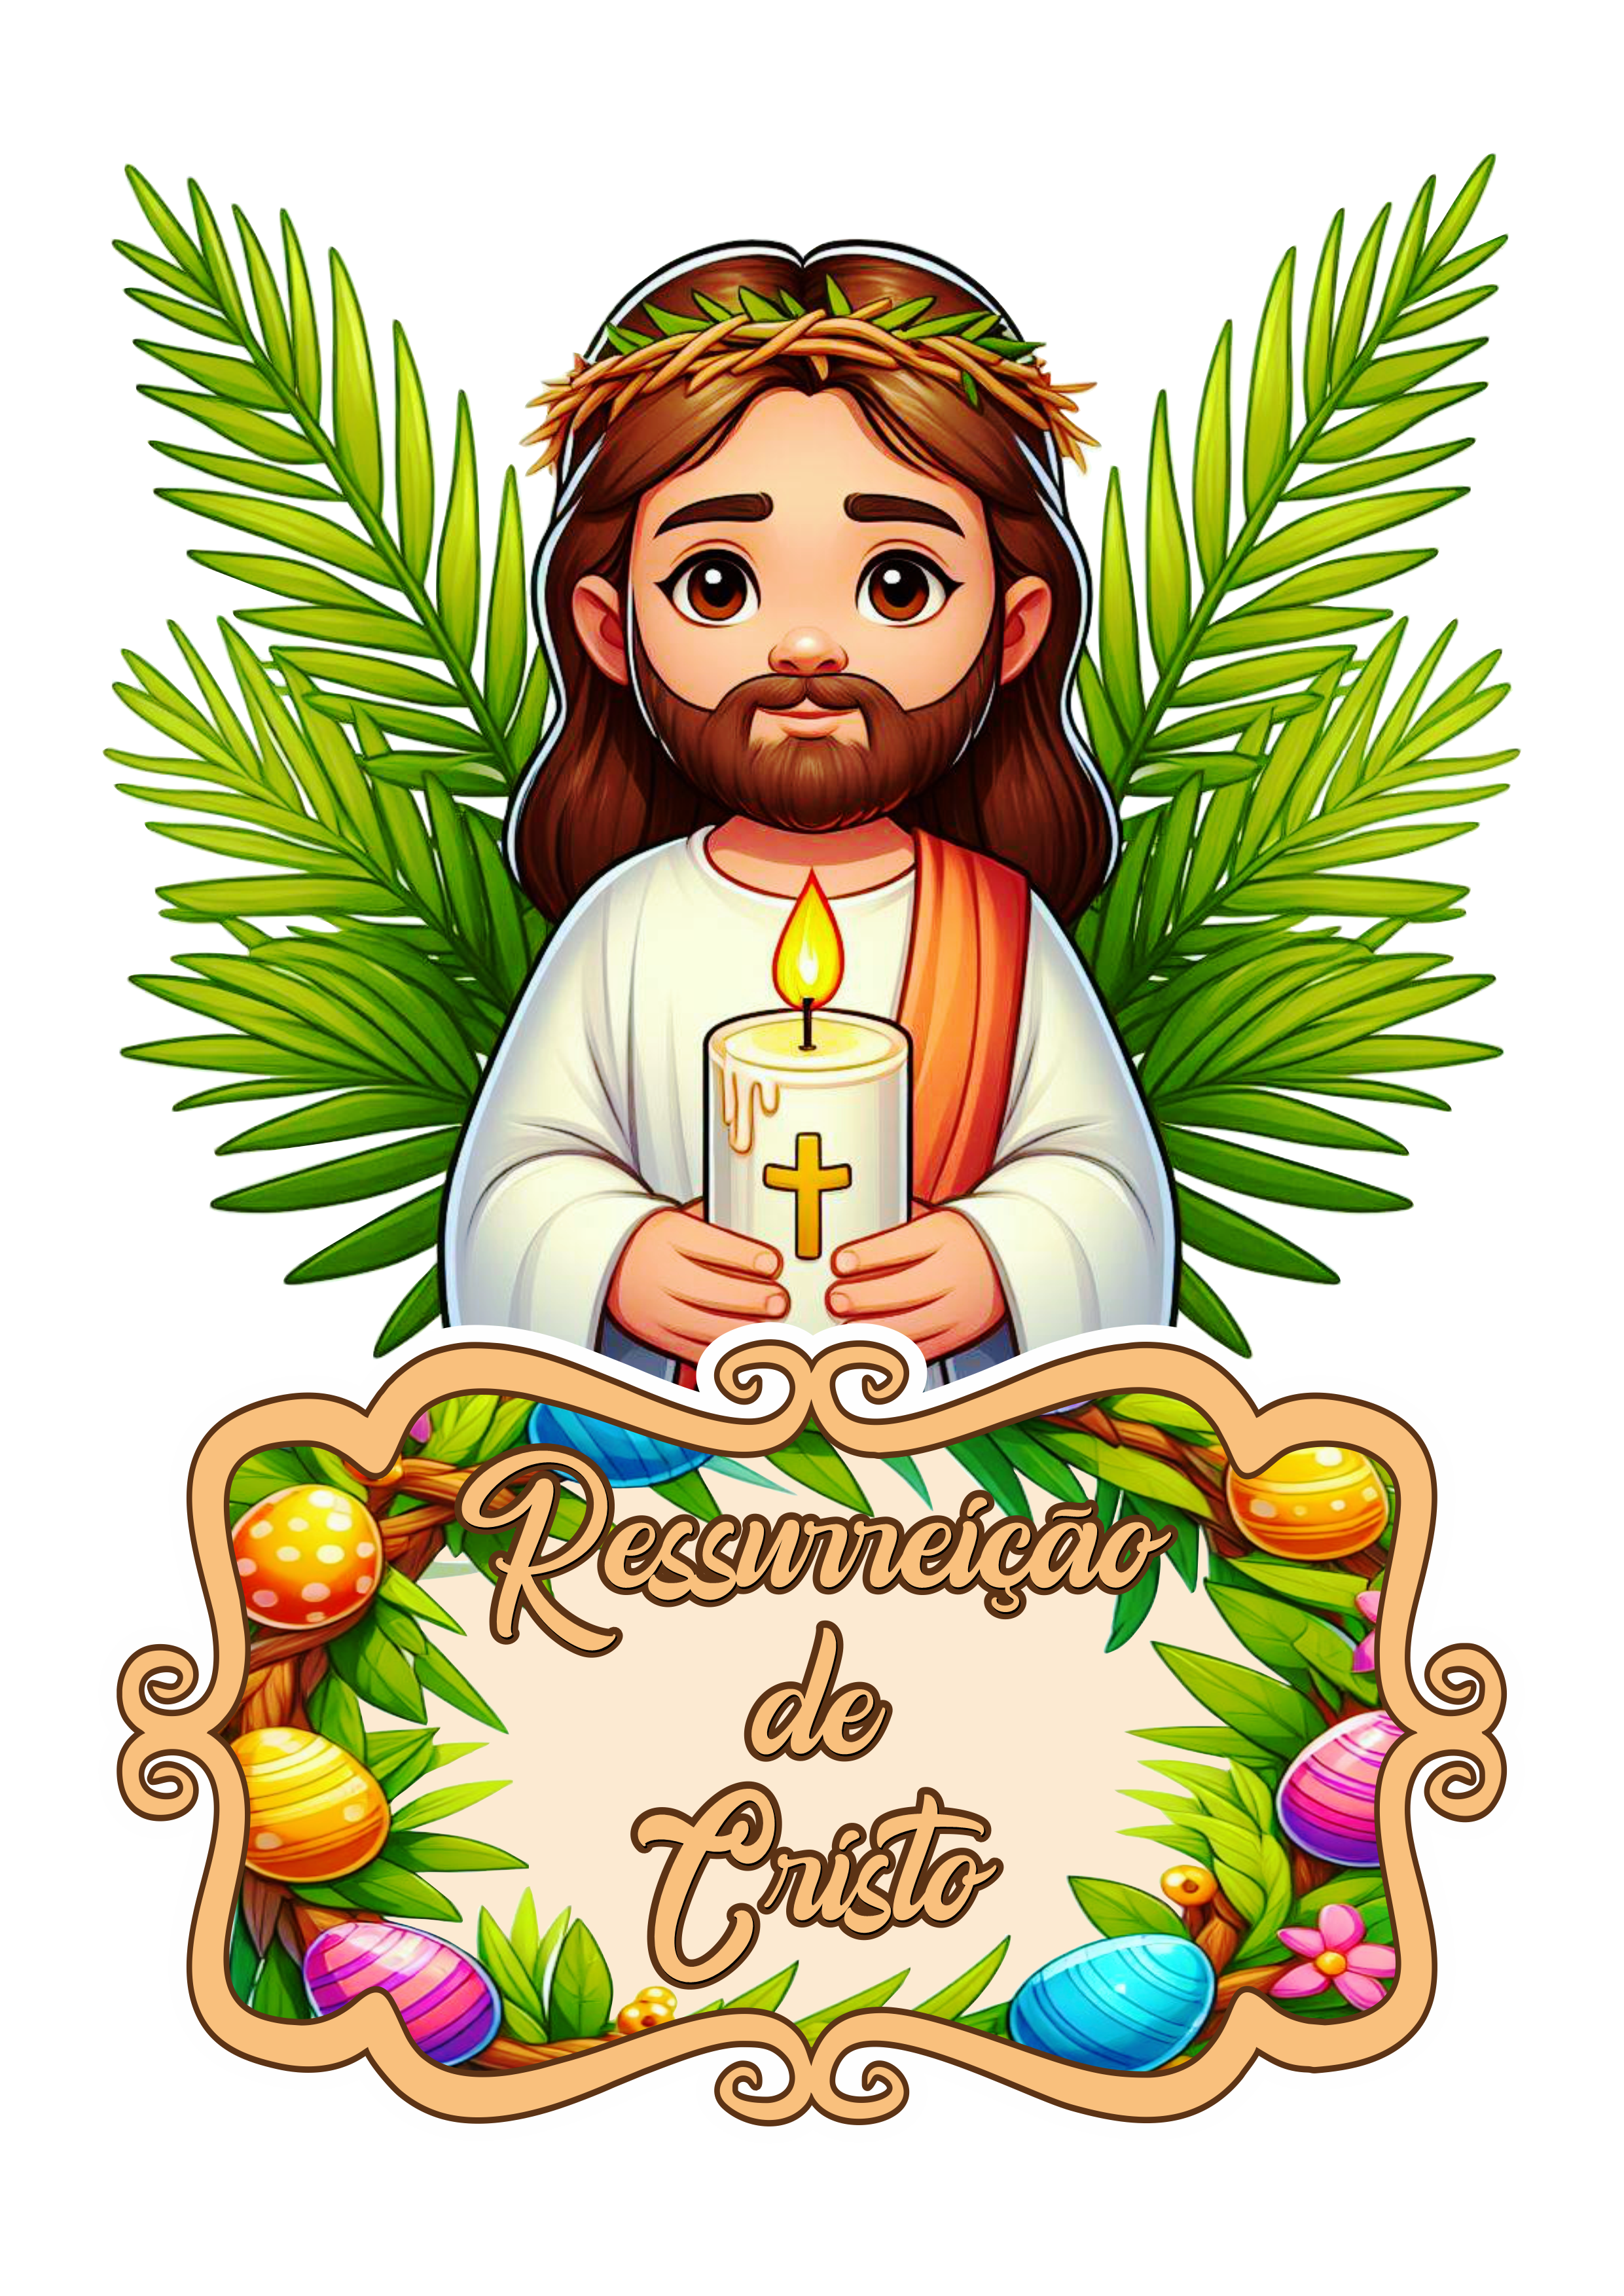 Jesus Cristo imagem para decoração na semana Santa ressureição png